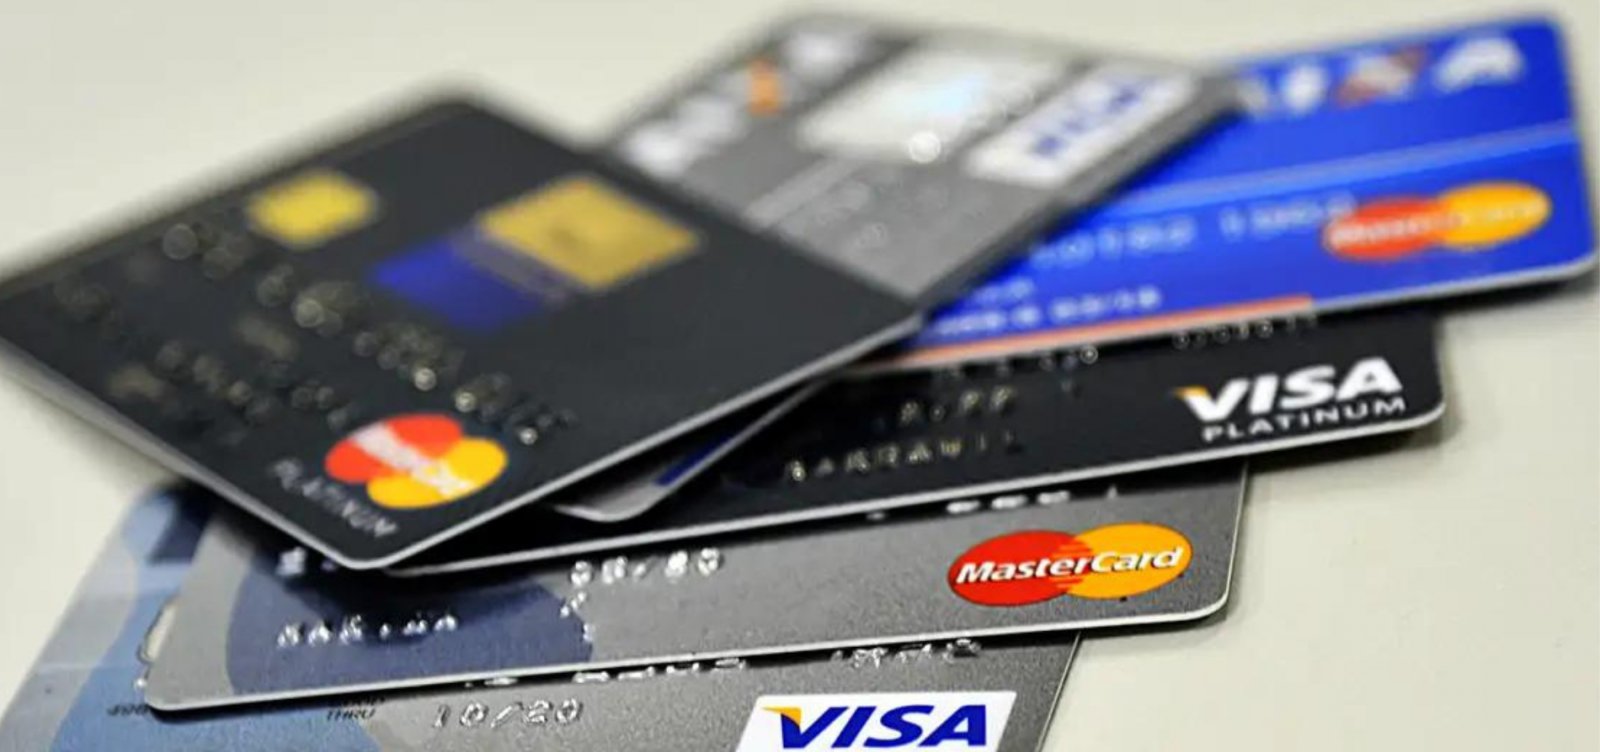 Juros para quem atrasar pagamento da fatura do cartão de crédito não poderão ultrapassar dívida original